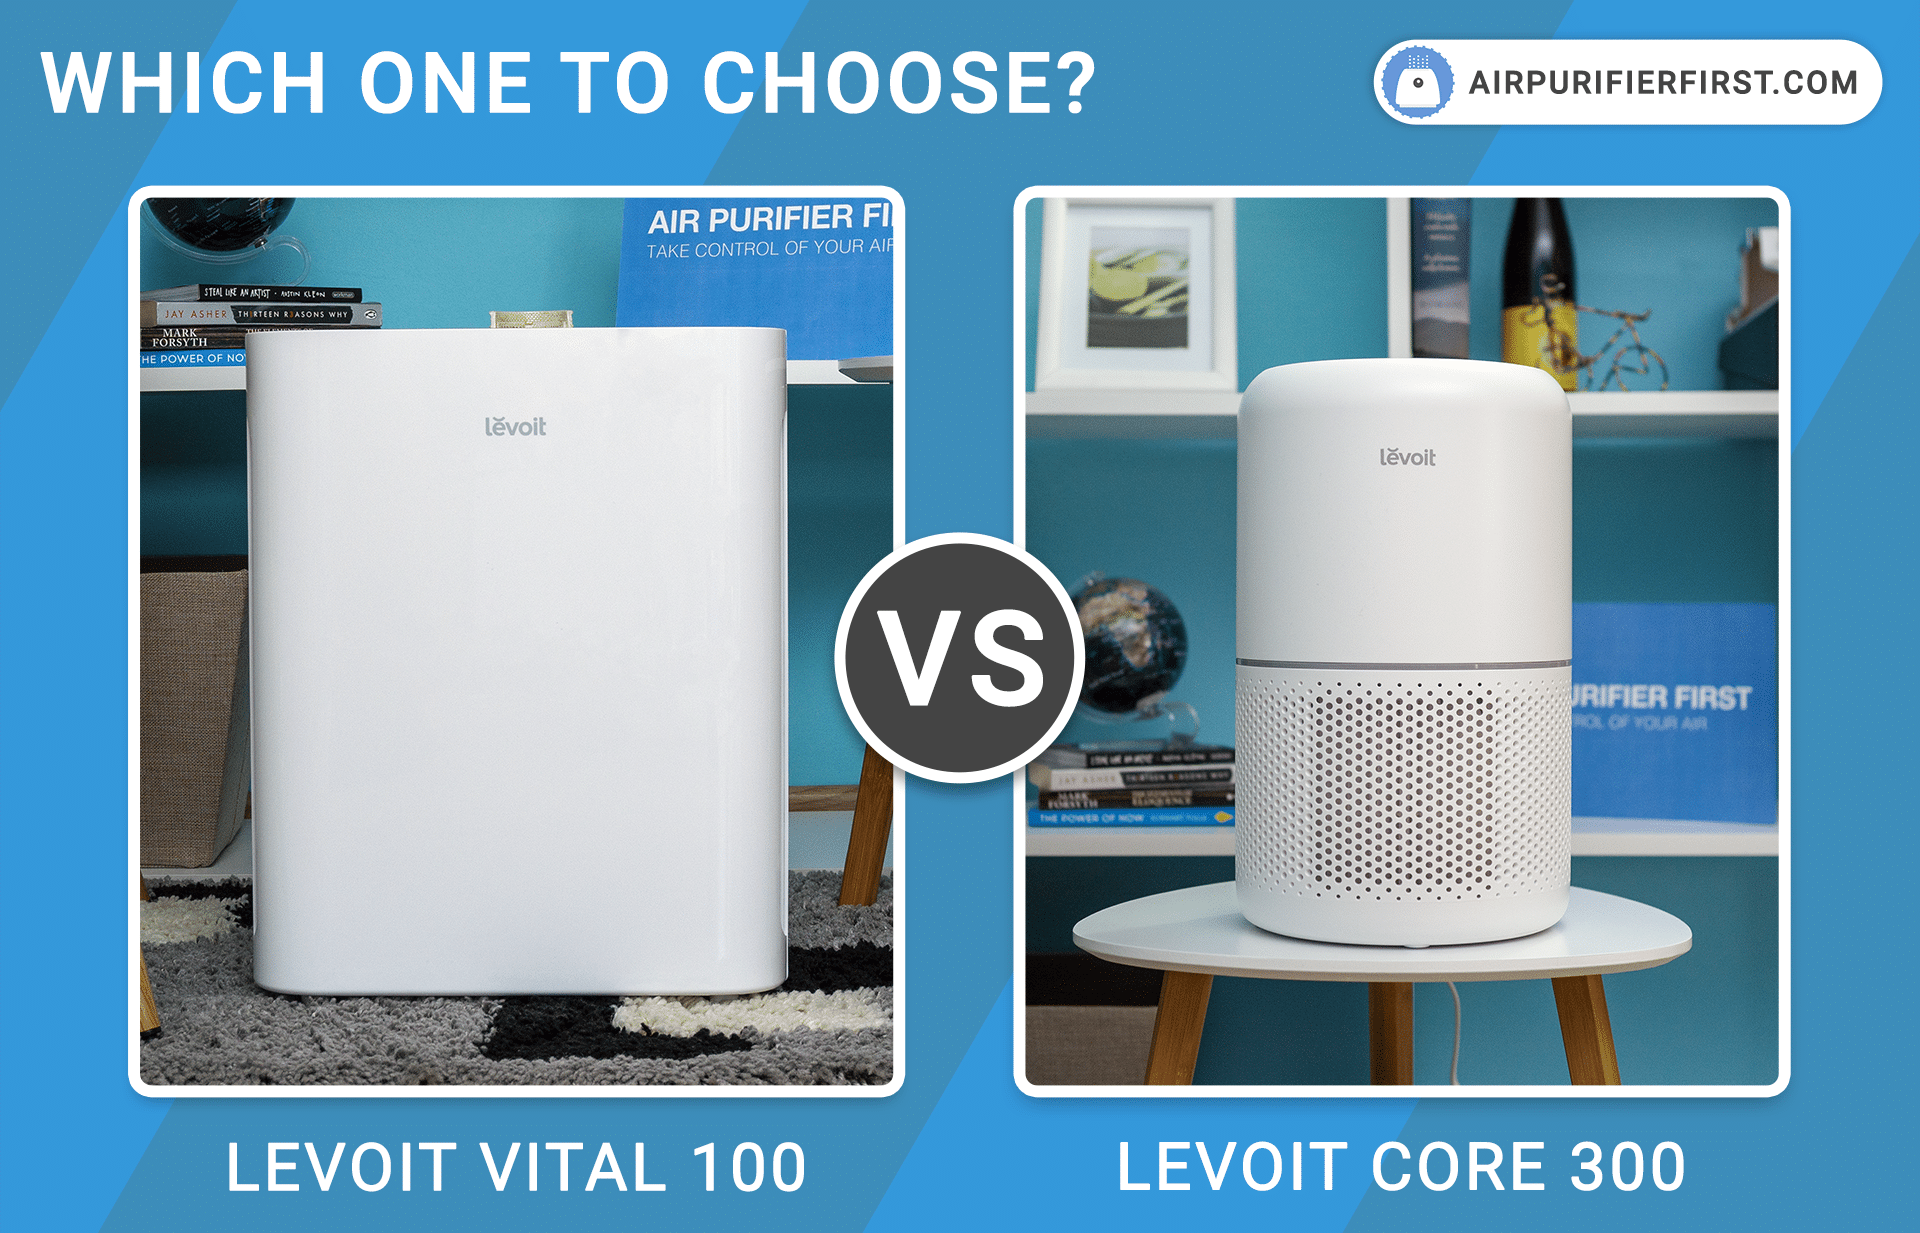 Levoit Vital 100 Vs Levoit Core 300 - Comparison